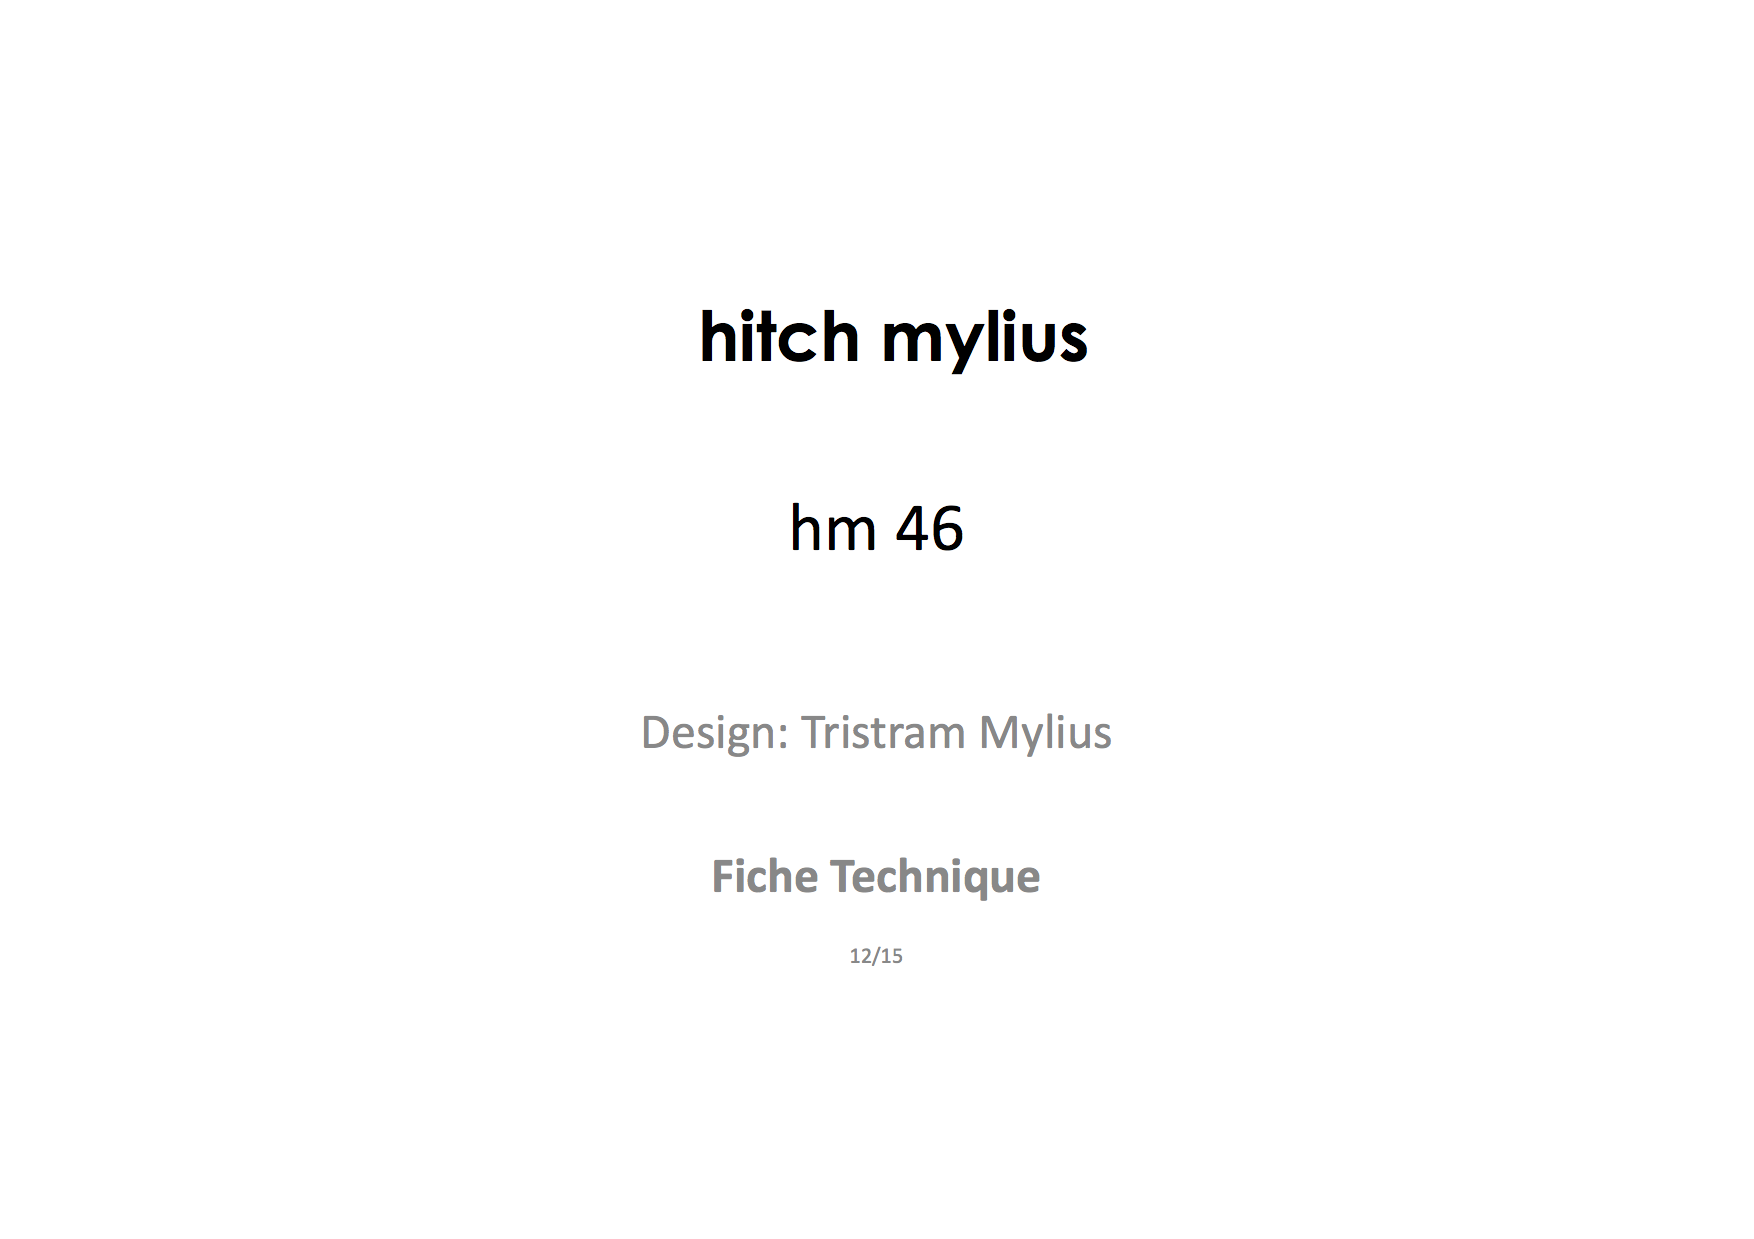 hm46 Hitch Mylius Fiche technique